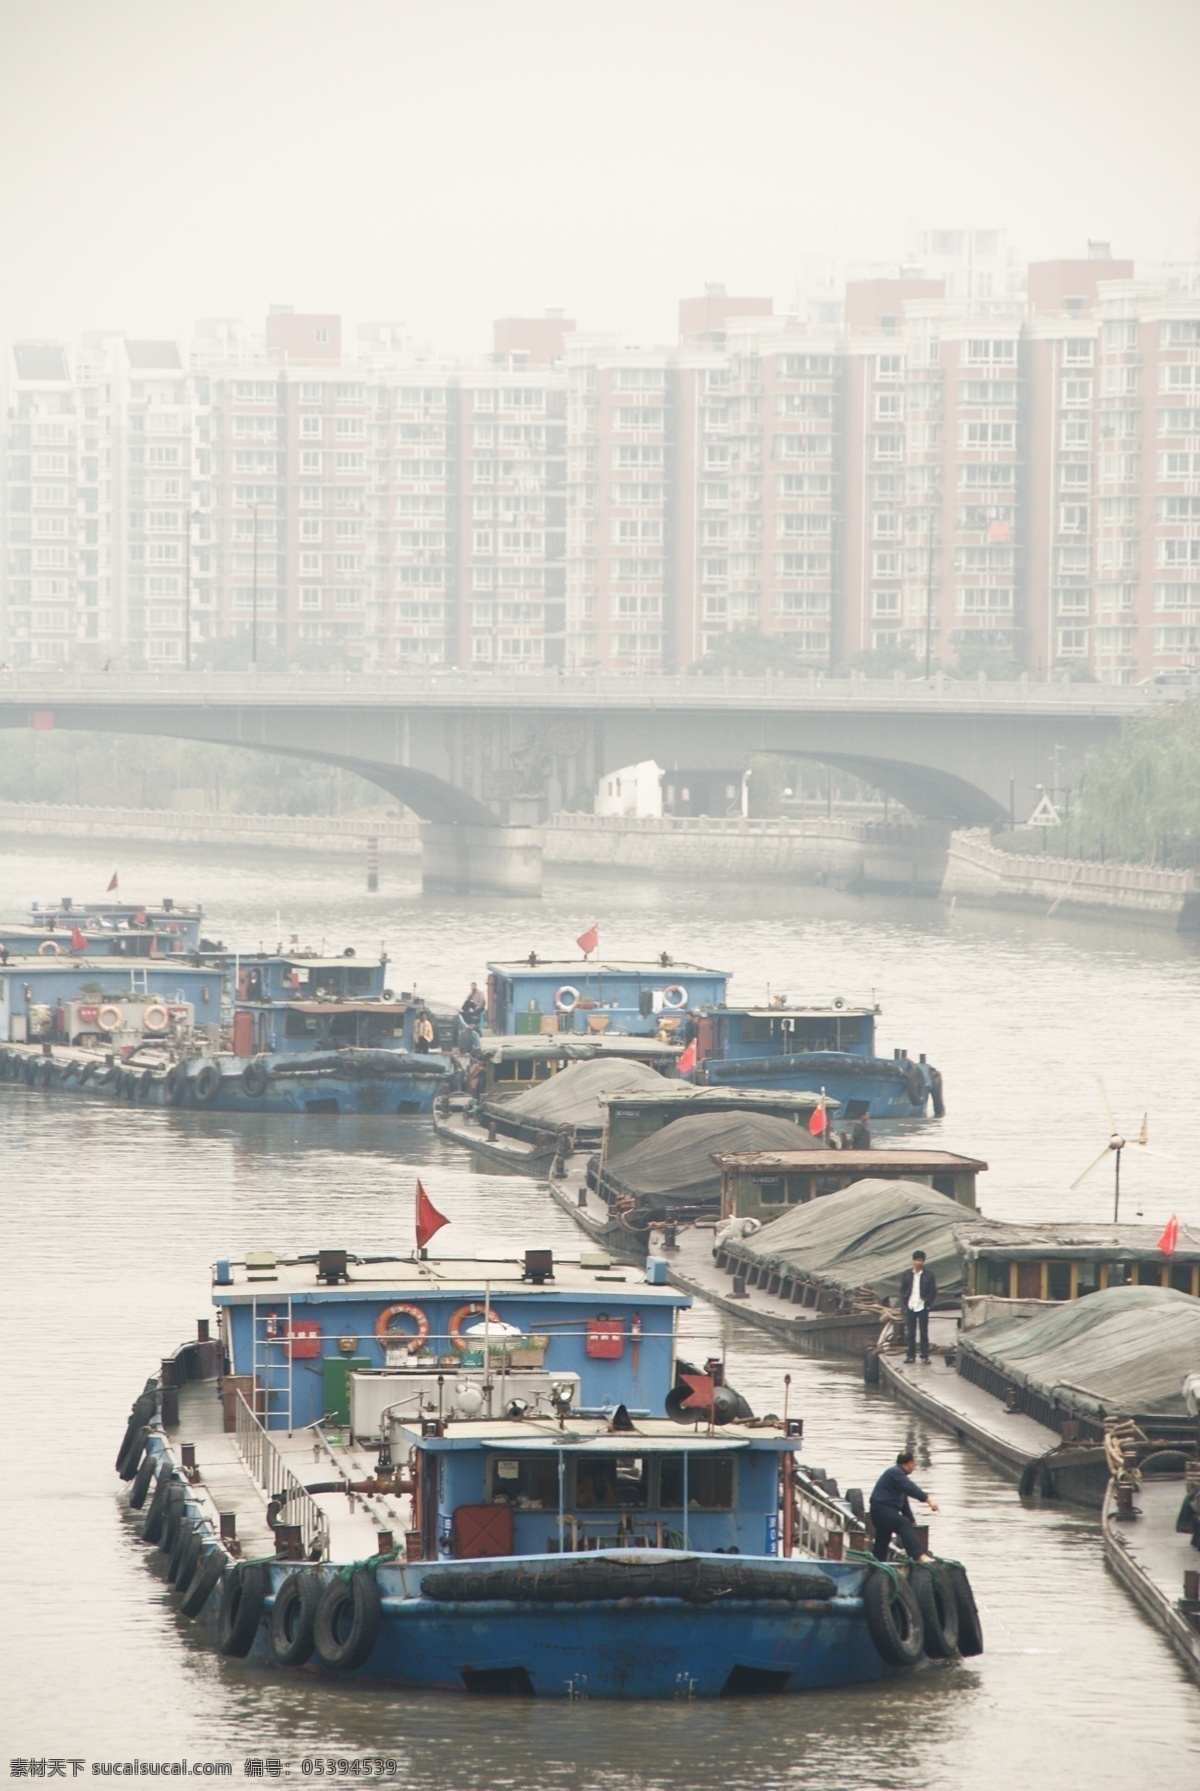 大运河船队 大运河 京杭运河 船队 船运 繁忙 轮机船 拱桥 旅游摄影 国内旅游